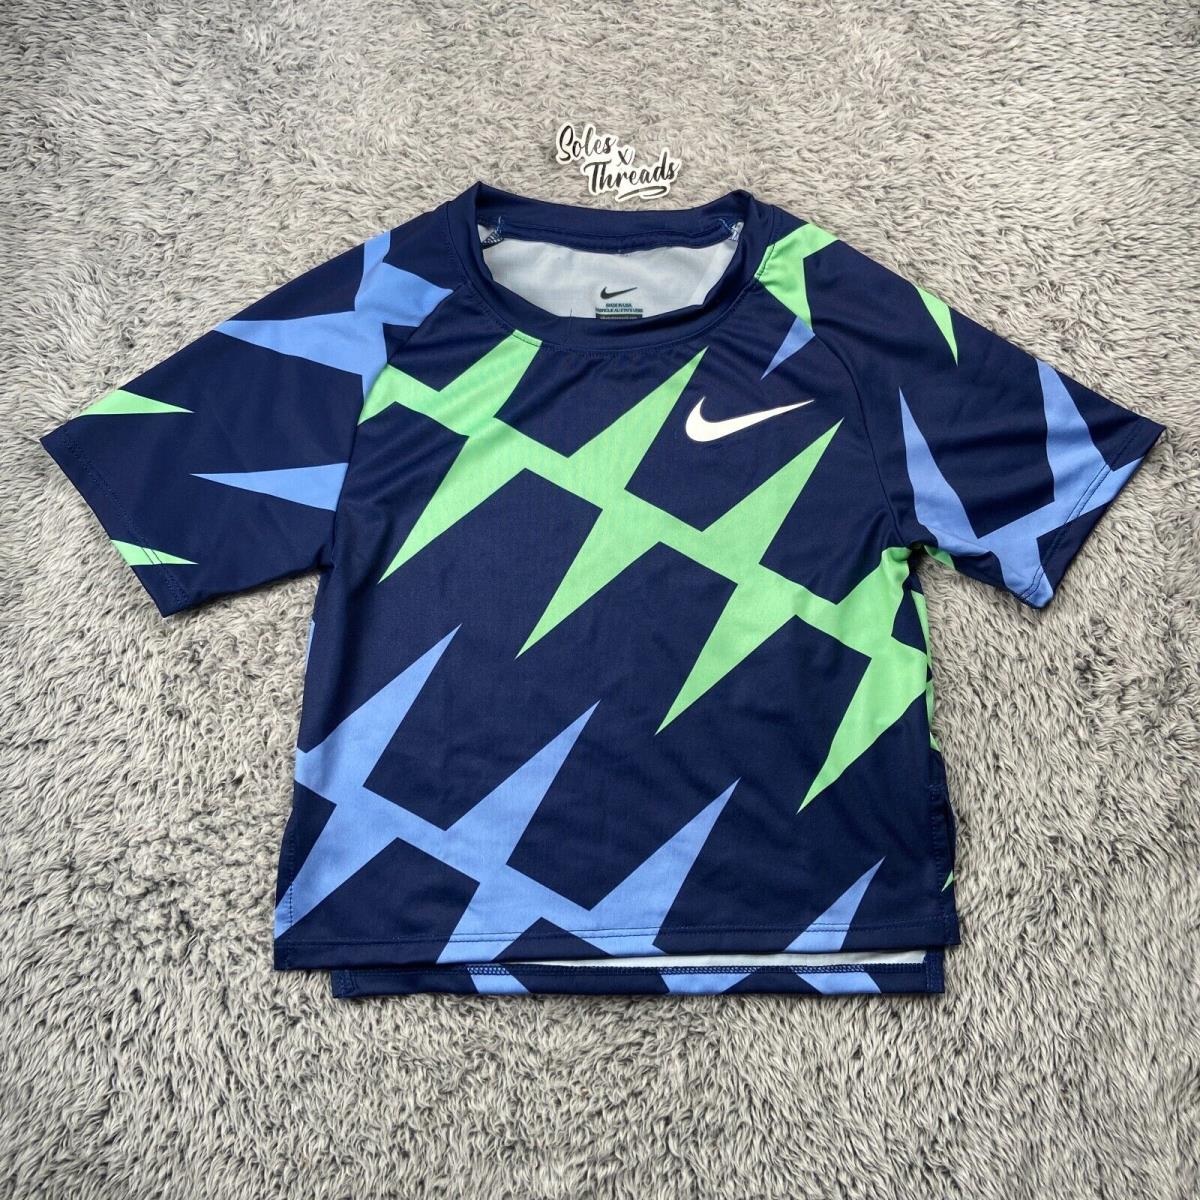 Nike Pro Elite Made IN Usa Track Field Crop Jersey Size Xxs Women Navy